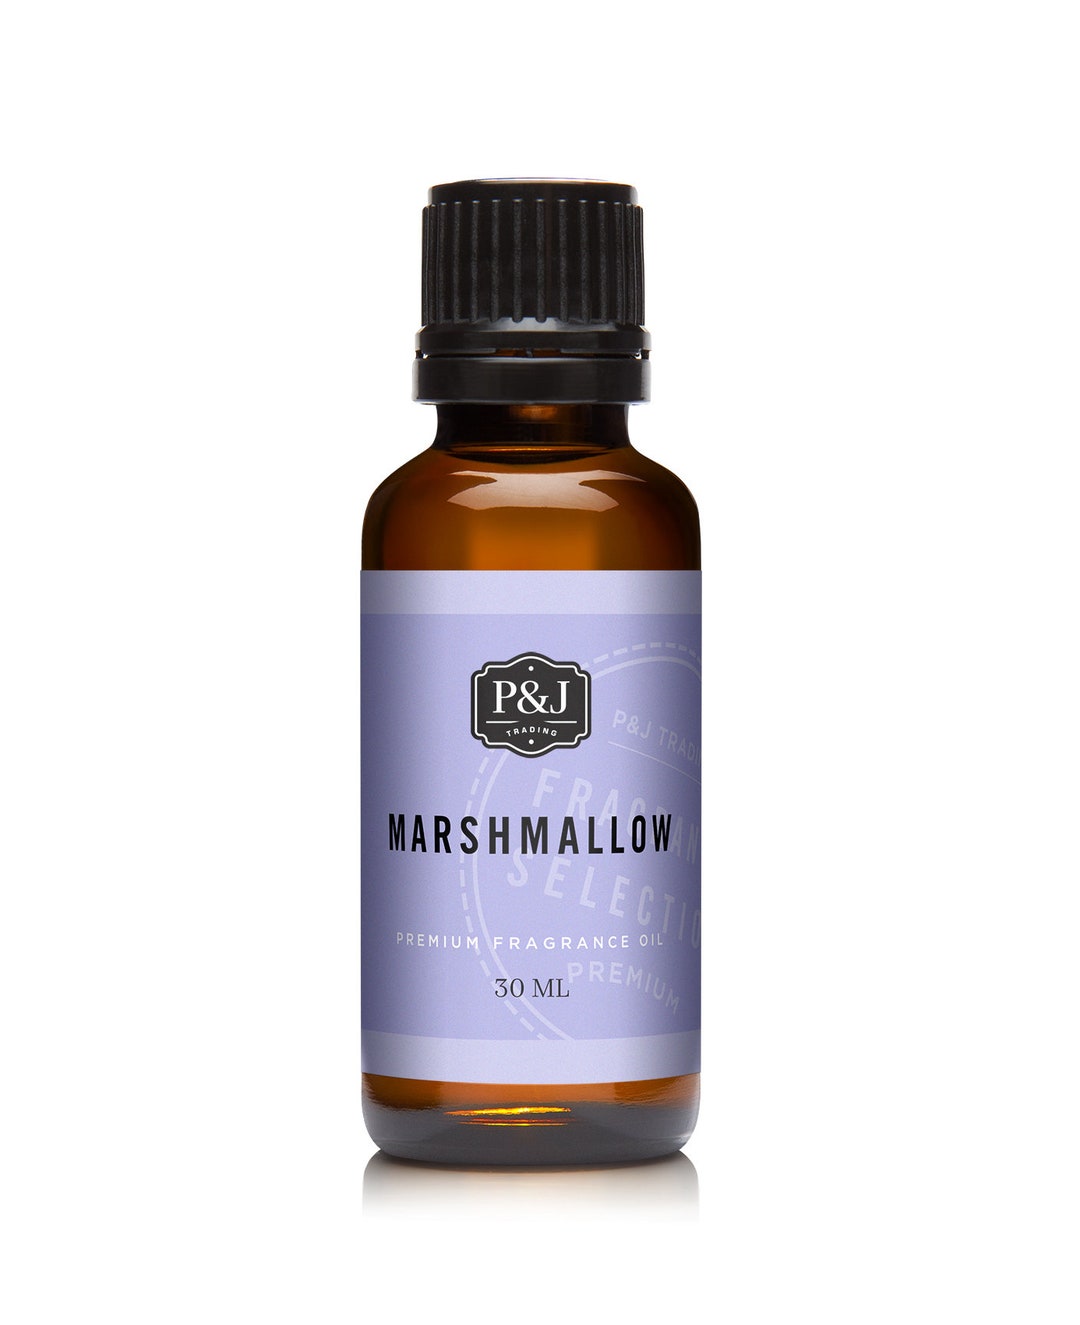 Marshmallow Premium Grade Fragrance Oil 30ml